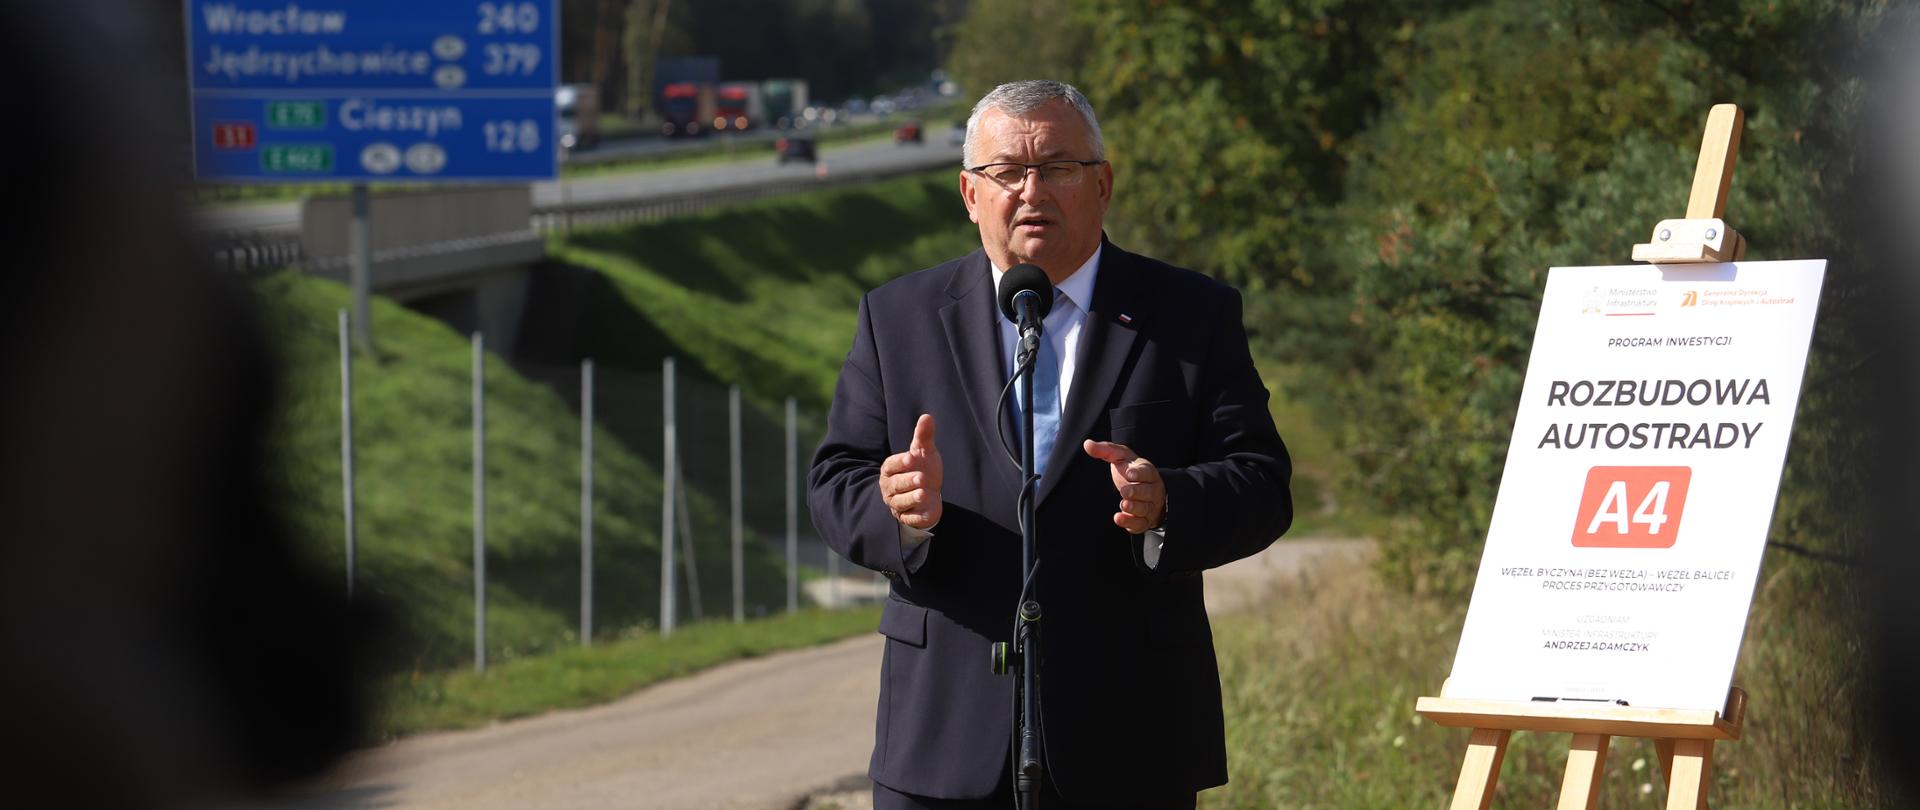 Autostrada A4 Kraków – Katowice zostanie poszerzona! 